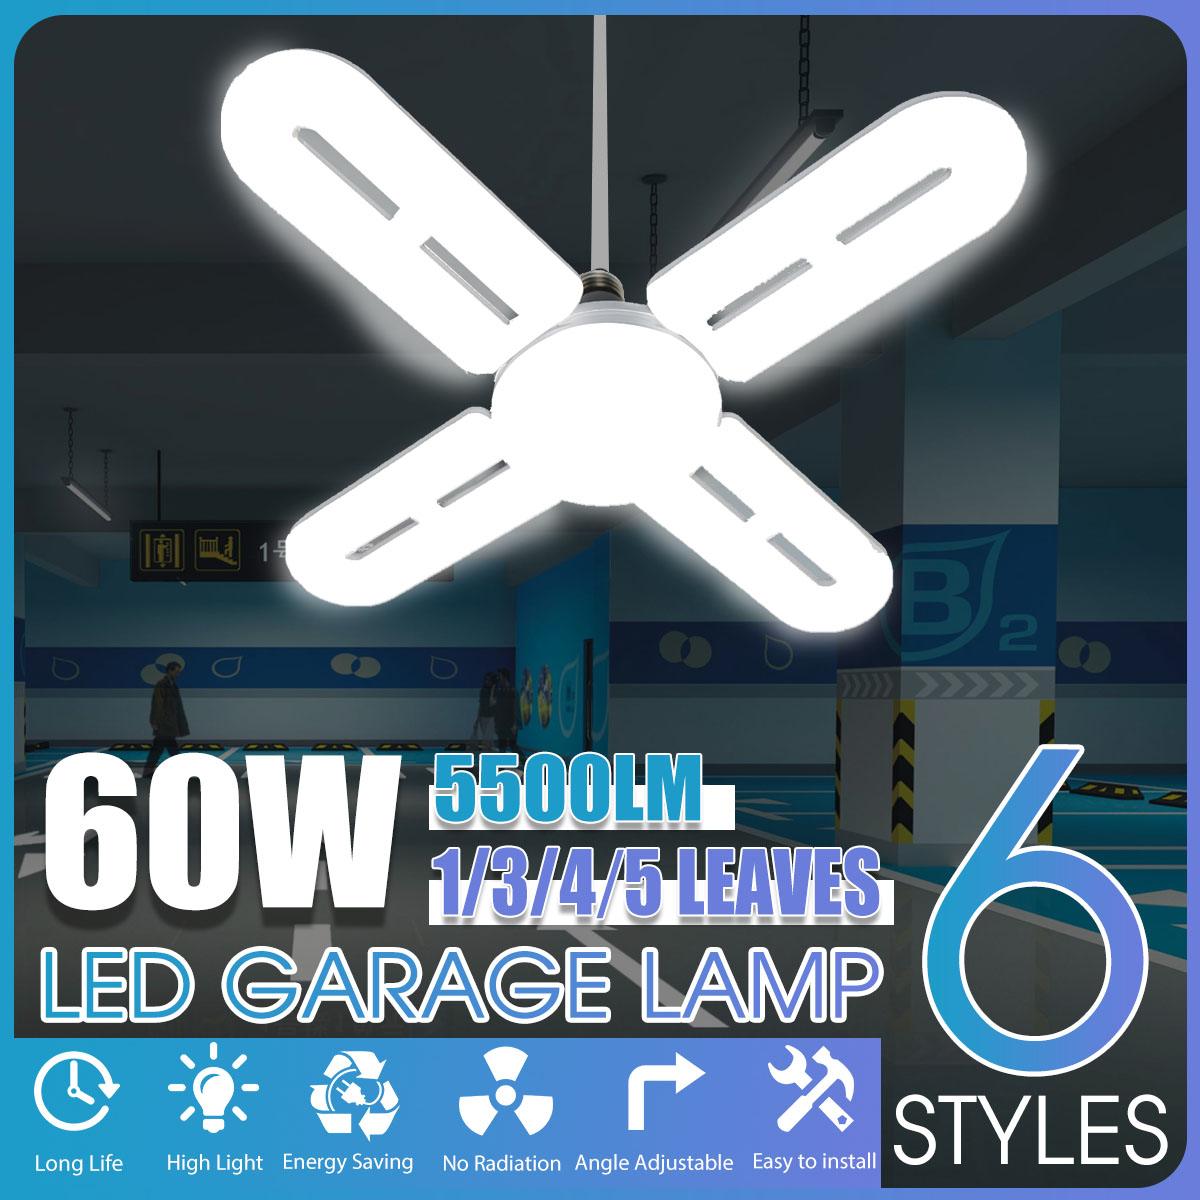 100-265V-LED-Garage-Lamp-LongShort-Deformation-Folding-Lamp-Household-Lighting-Garage-Light-1837046-1